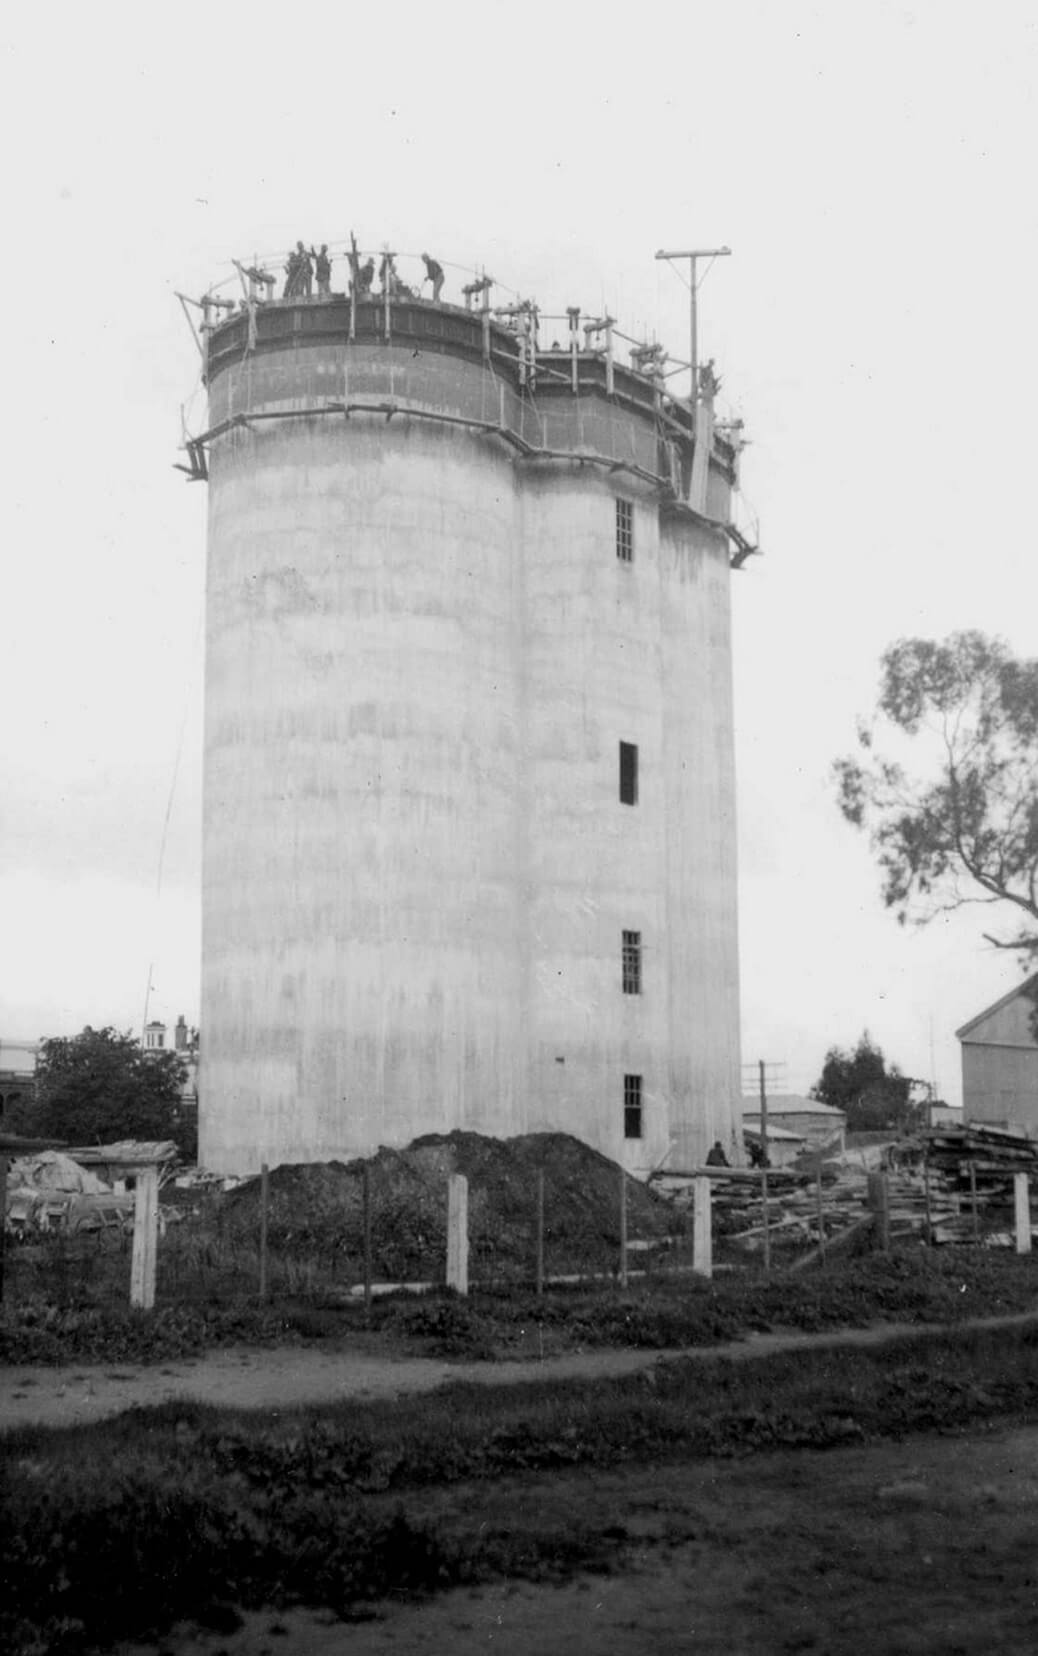 building the Rochester silo